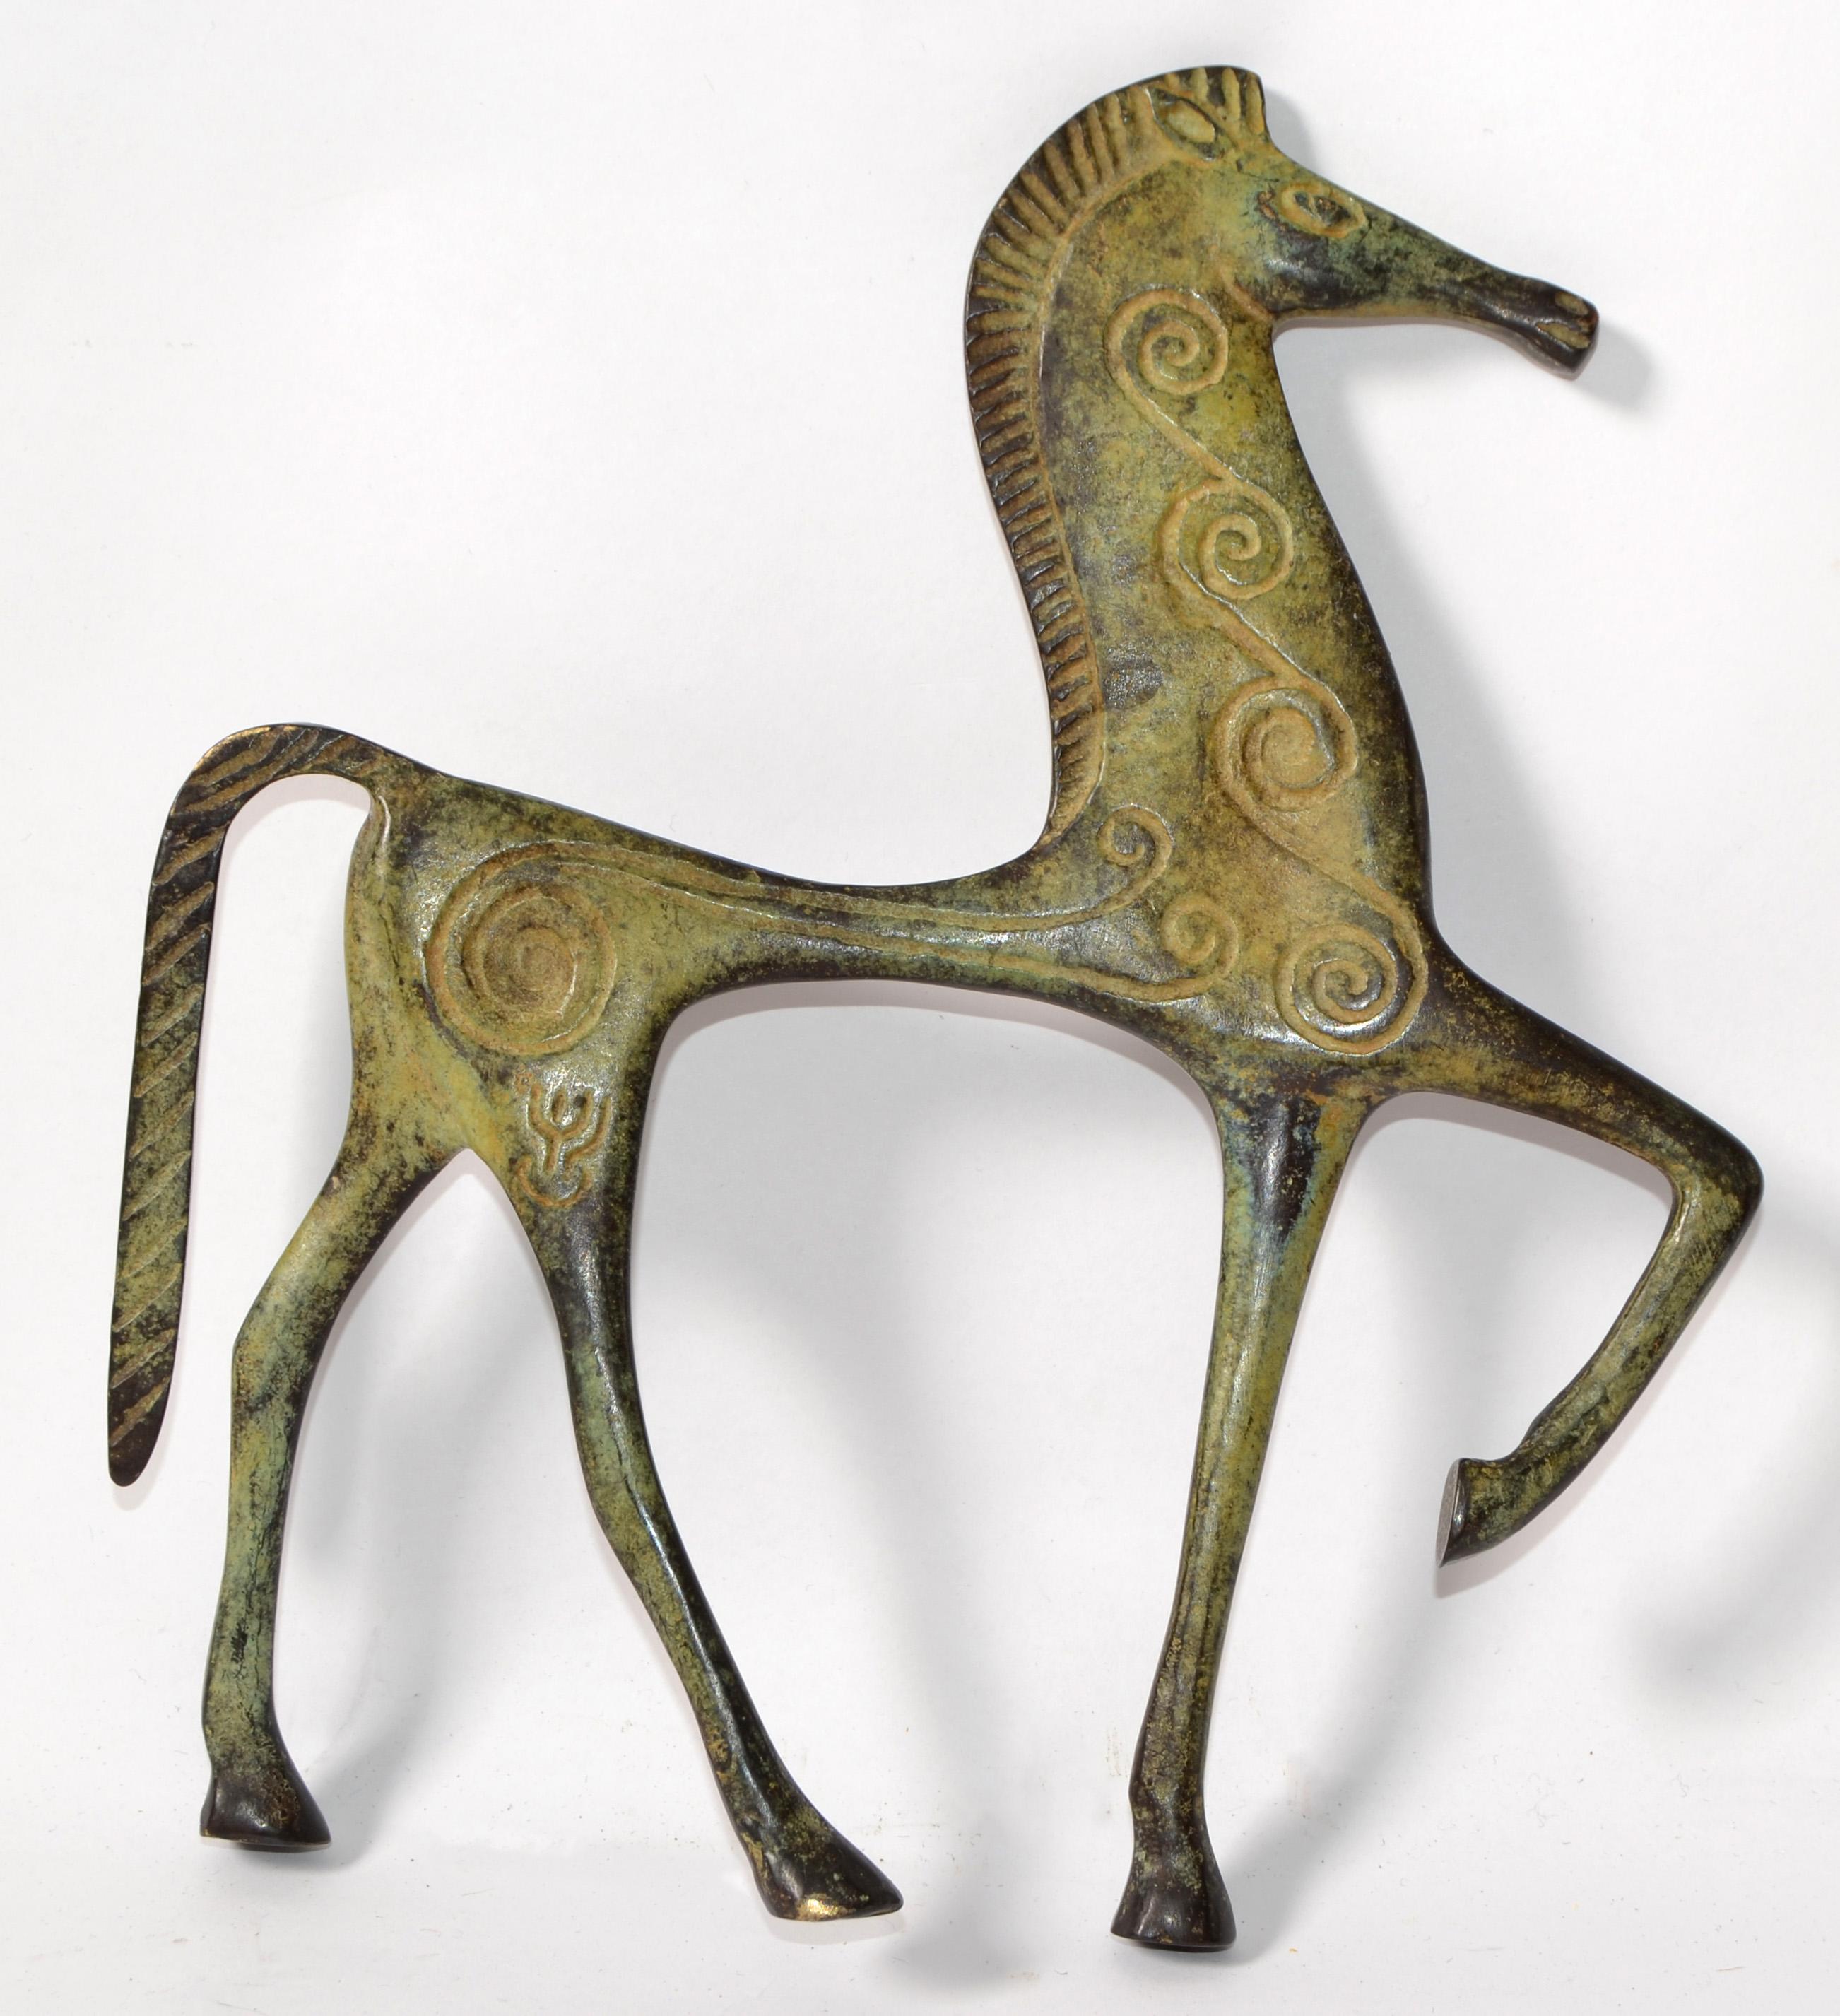 Es handelt sich um eine Bronzeskulptur, die möglicherweise von Frederic Weinberg für Raymor angefertigt wurde.
Es ist ein unglaublich stilisierte römische dekoriert Pferd Figurine und hat eine Patina zu beenden. In Italien hergestellt und ideal für